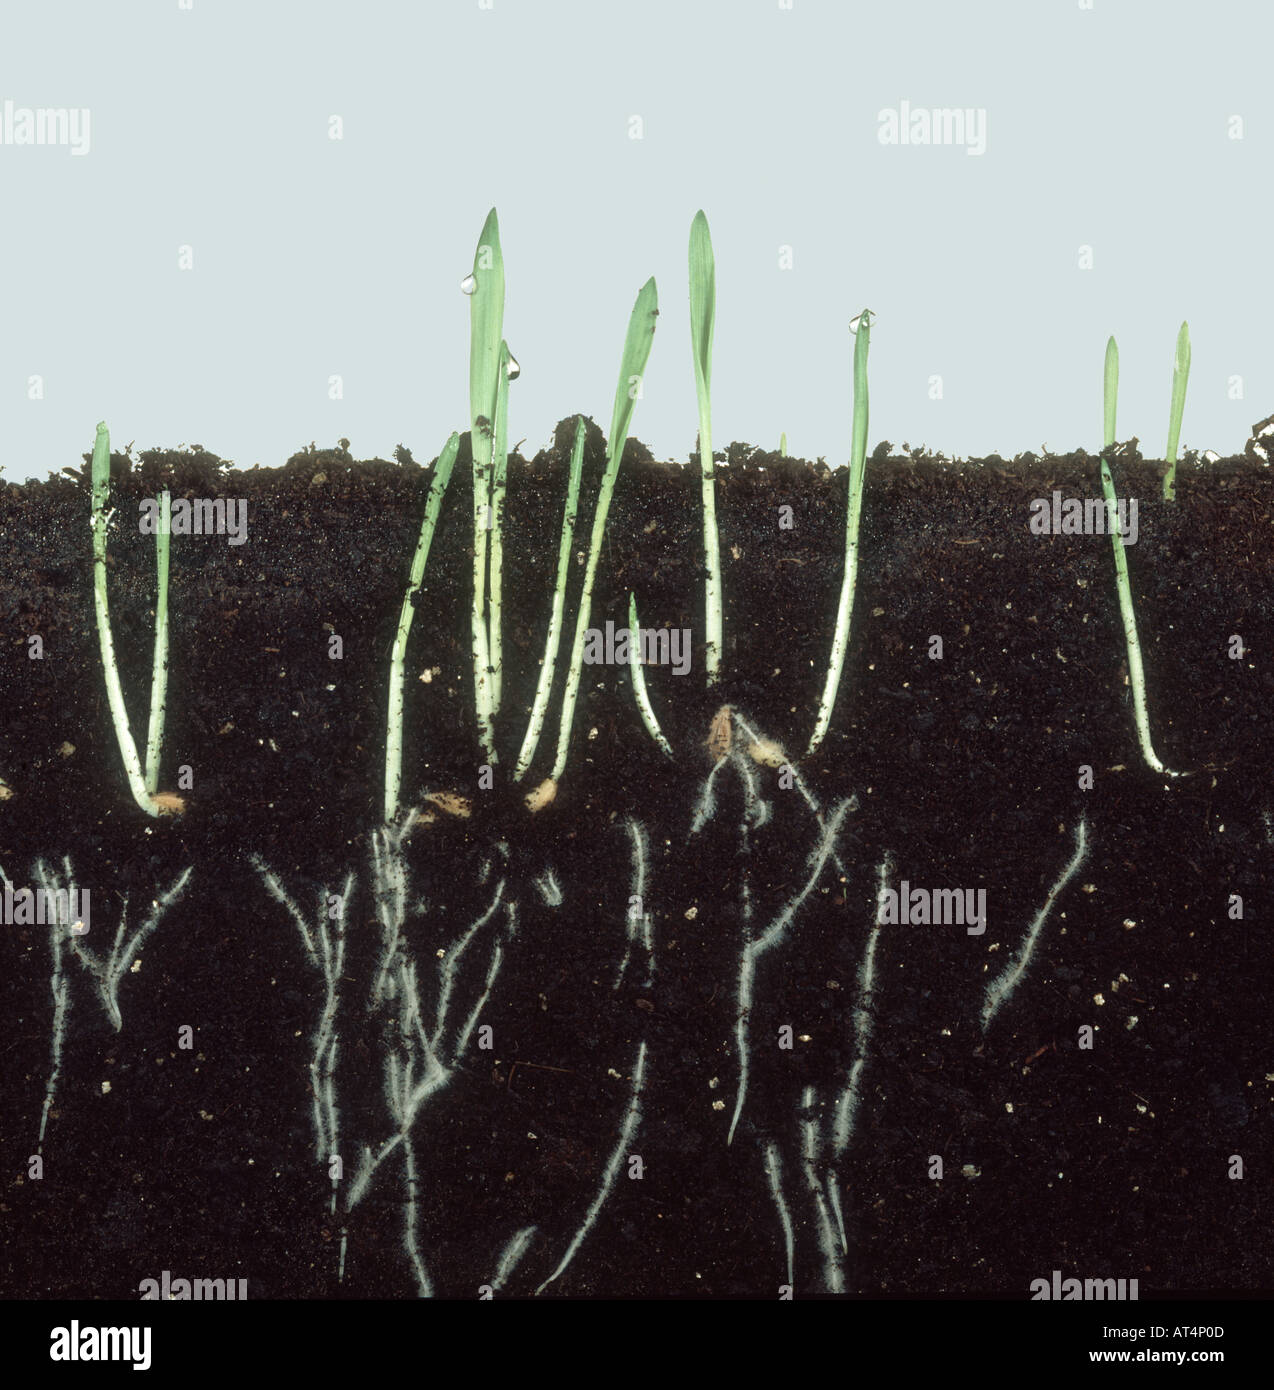 La germinazione di semi di orzo che mostra i giovani germogli e lo sviluppo della radice Foto Stock